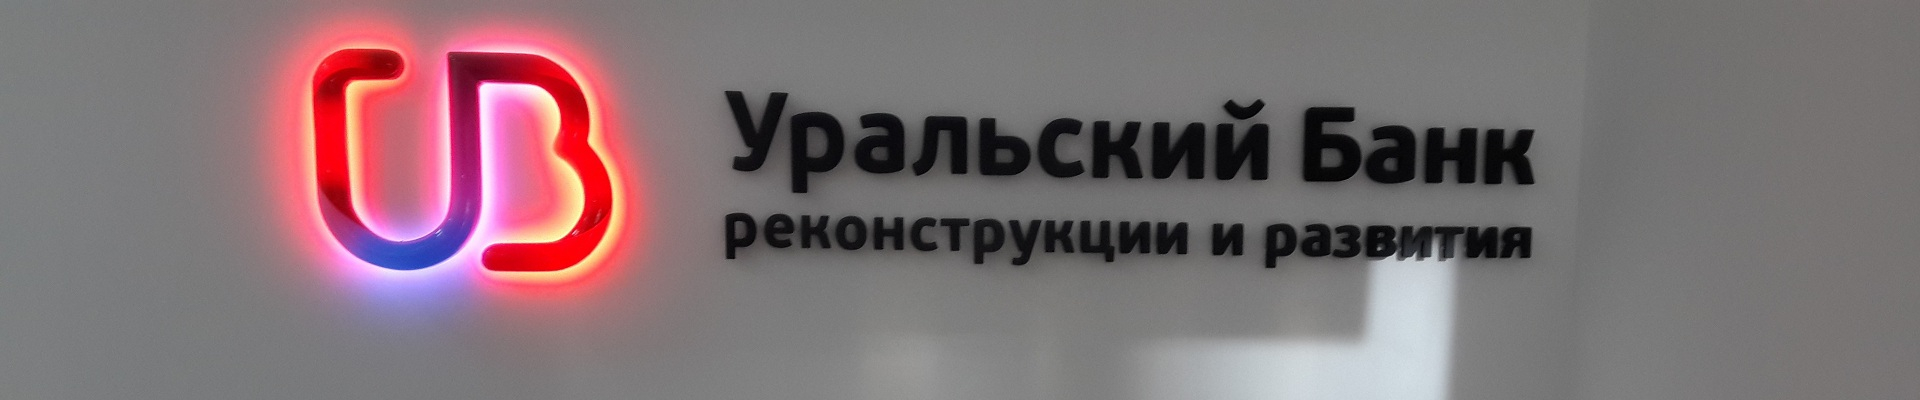 Уральский банк Реконструкции и Развития принимает от населения заявки на ипотечное кредитование